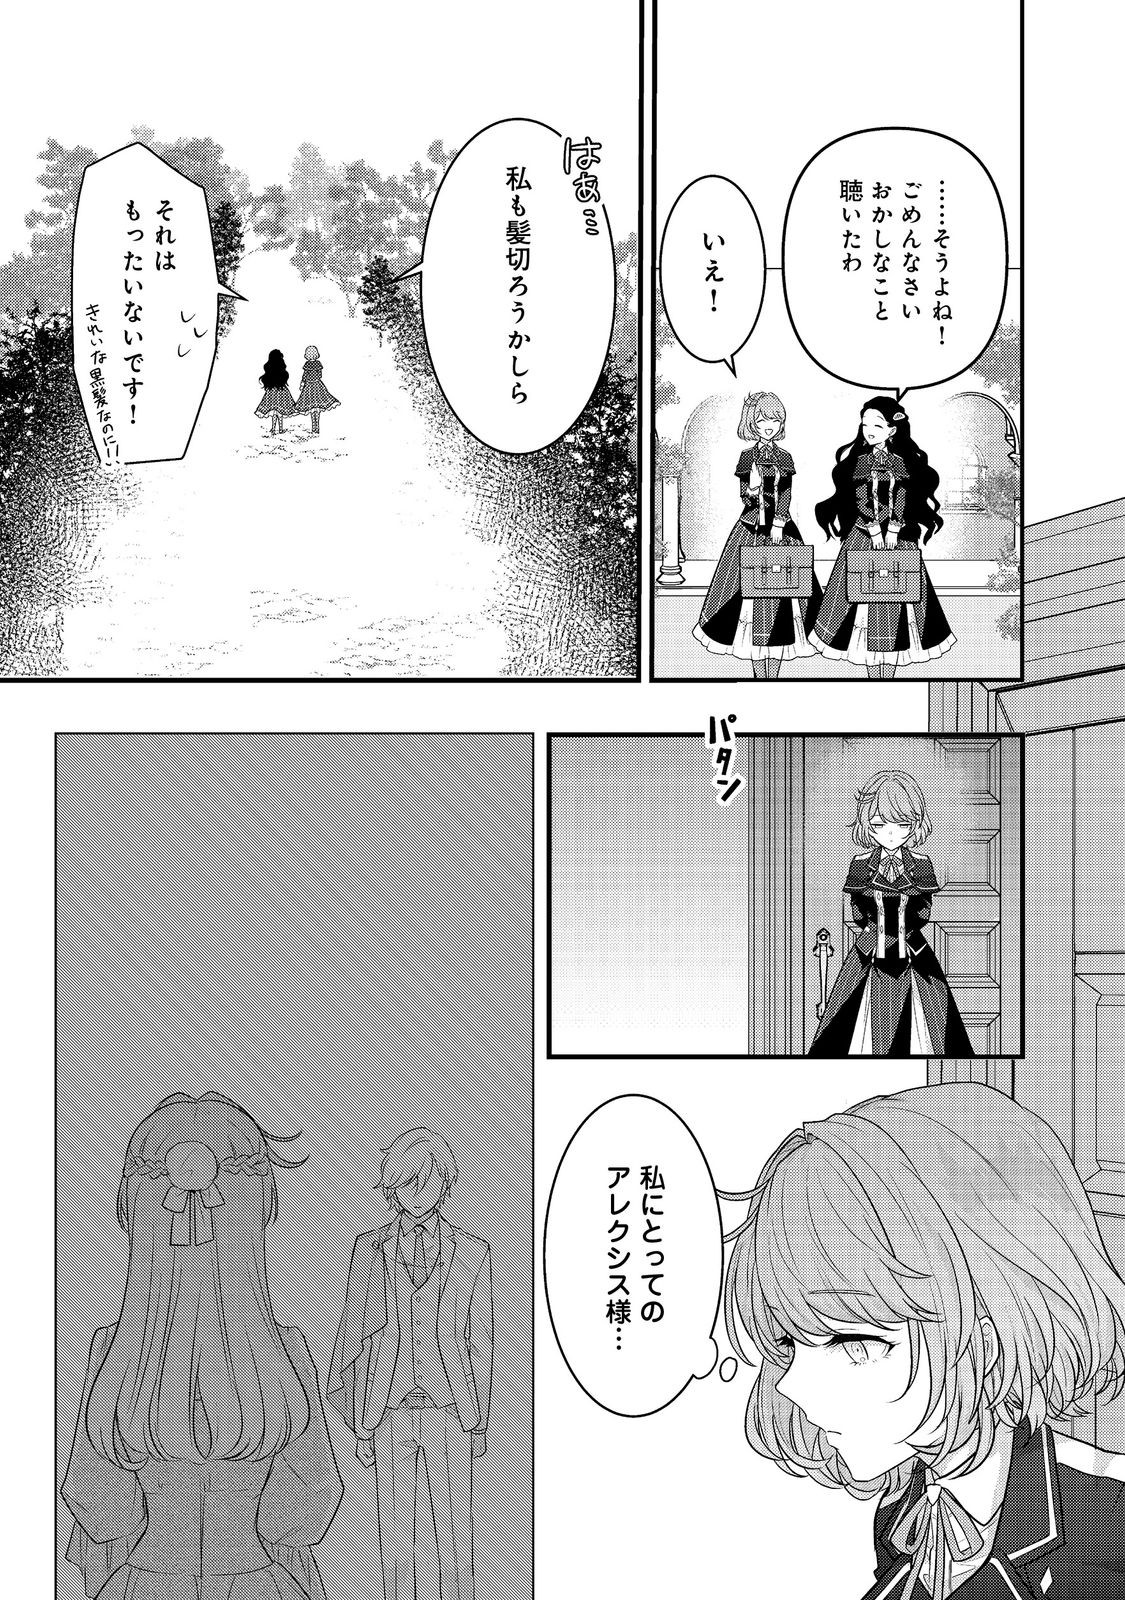 Kanjou wo Korosu no wo Yameta Moto Koushaku Reijou wa, Minna ni Dekiaisareteimasu! - Chapter 1 - Page 41